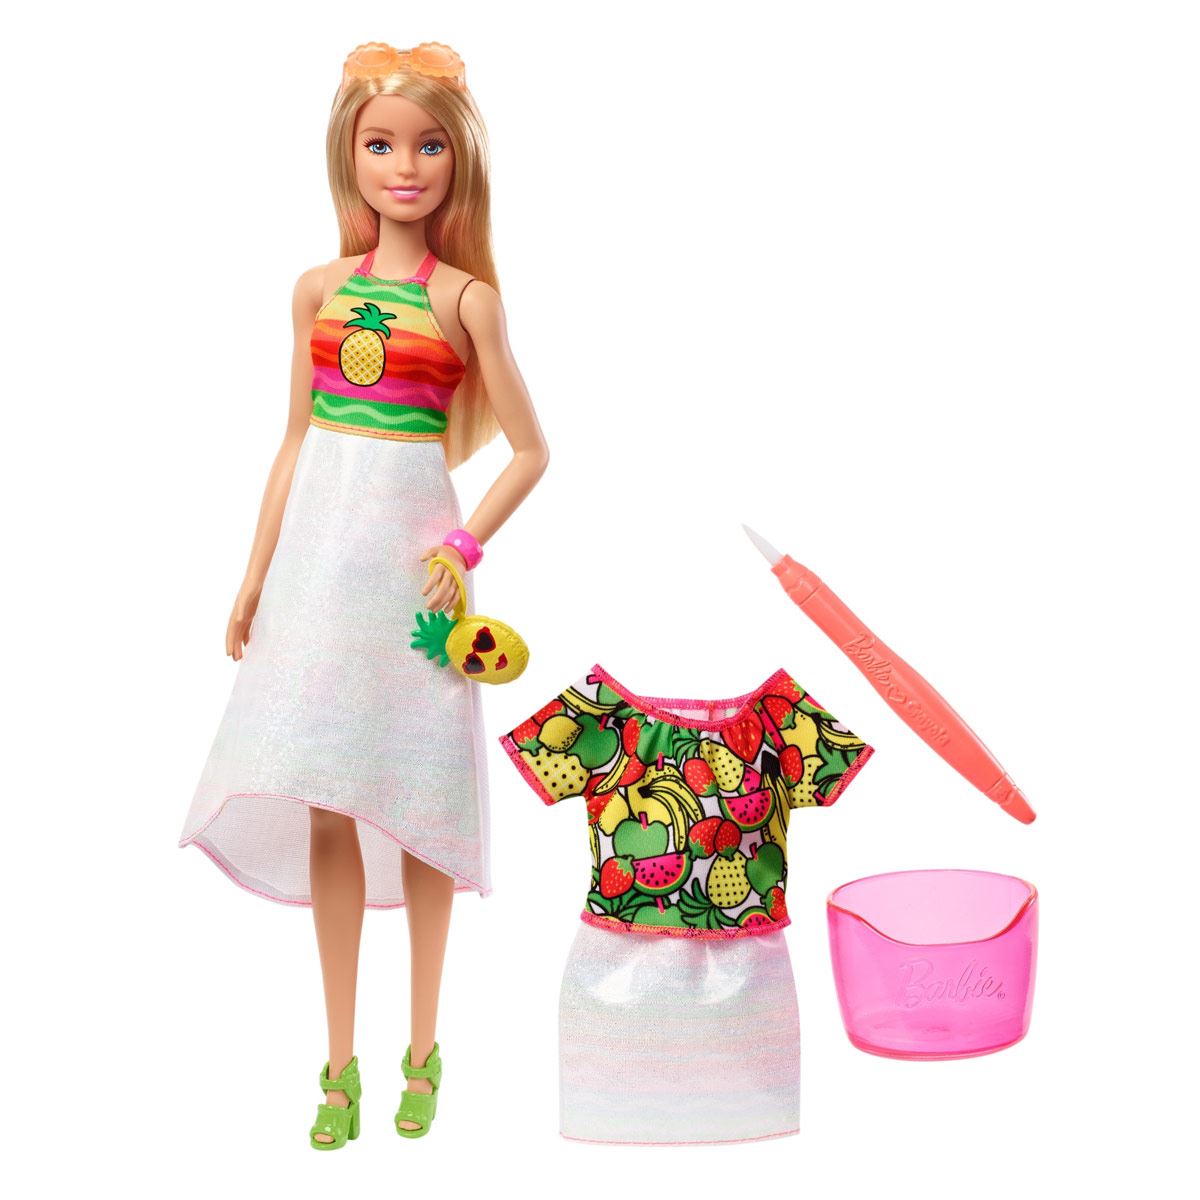 Hola Inolvidable sentido común Barbie Fashion Muñeca + Crayola Sorpresa de Frutas